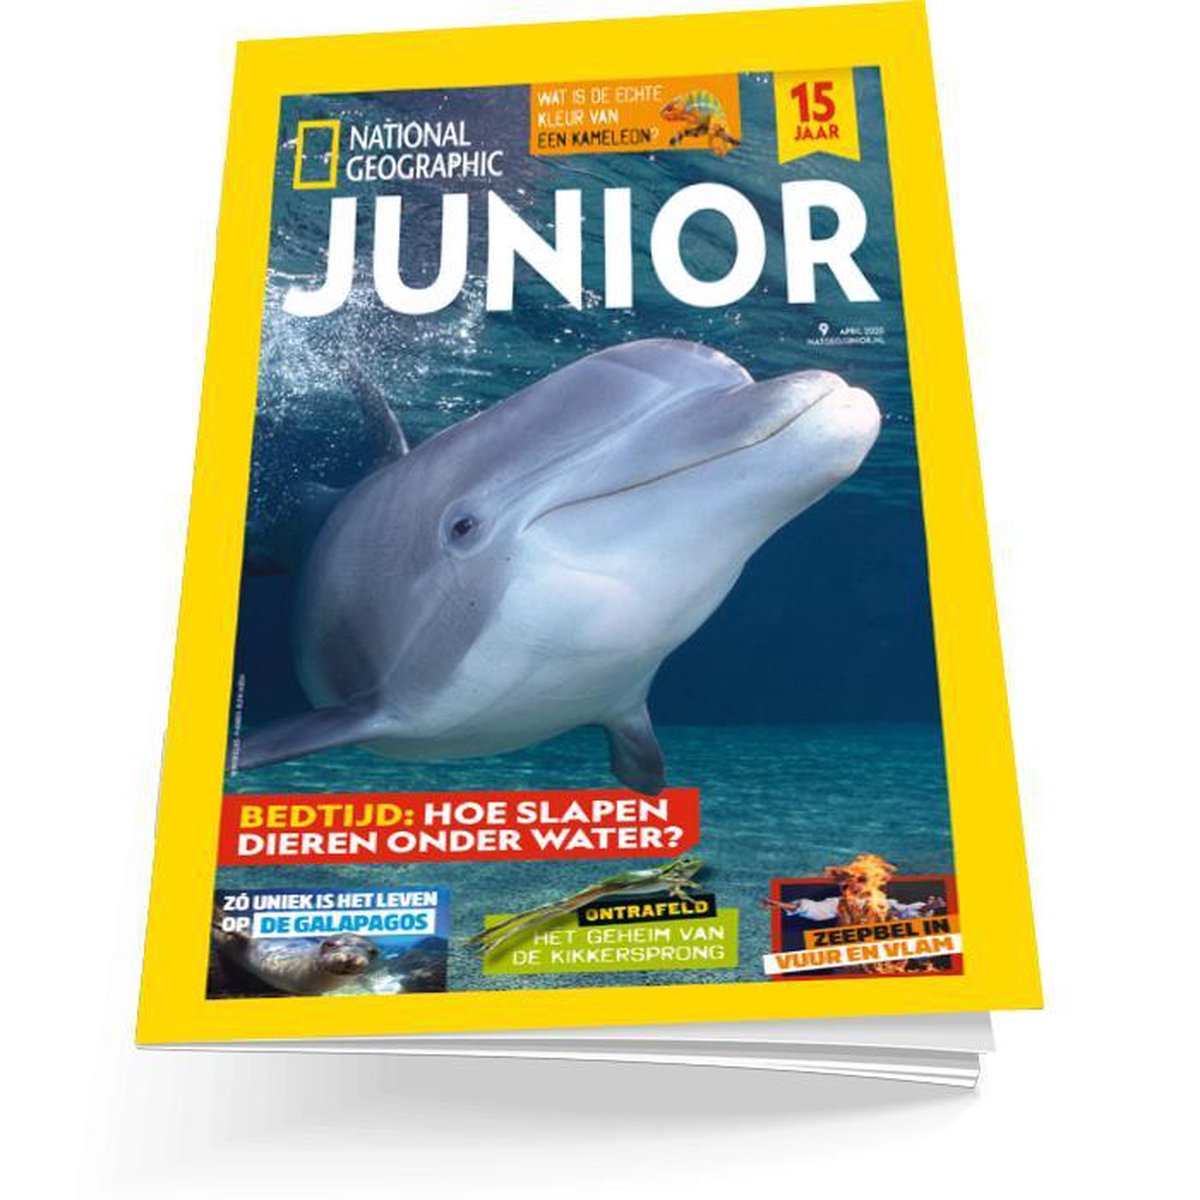 National Geographic Junior 9 - Kinderboek